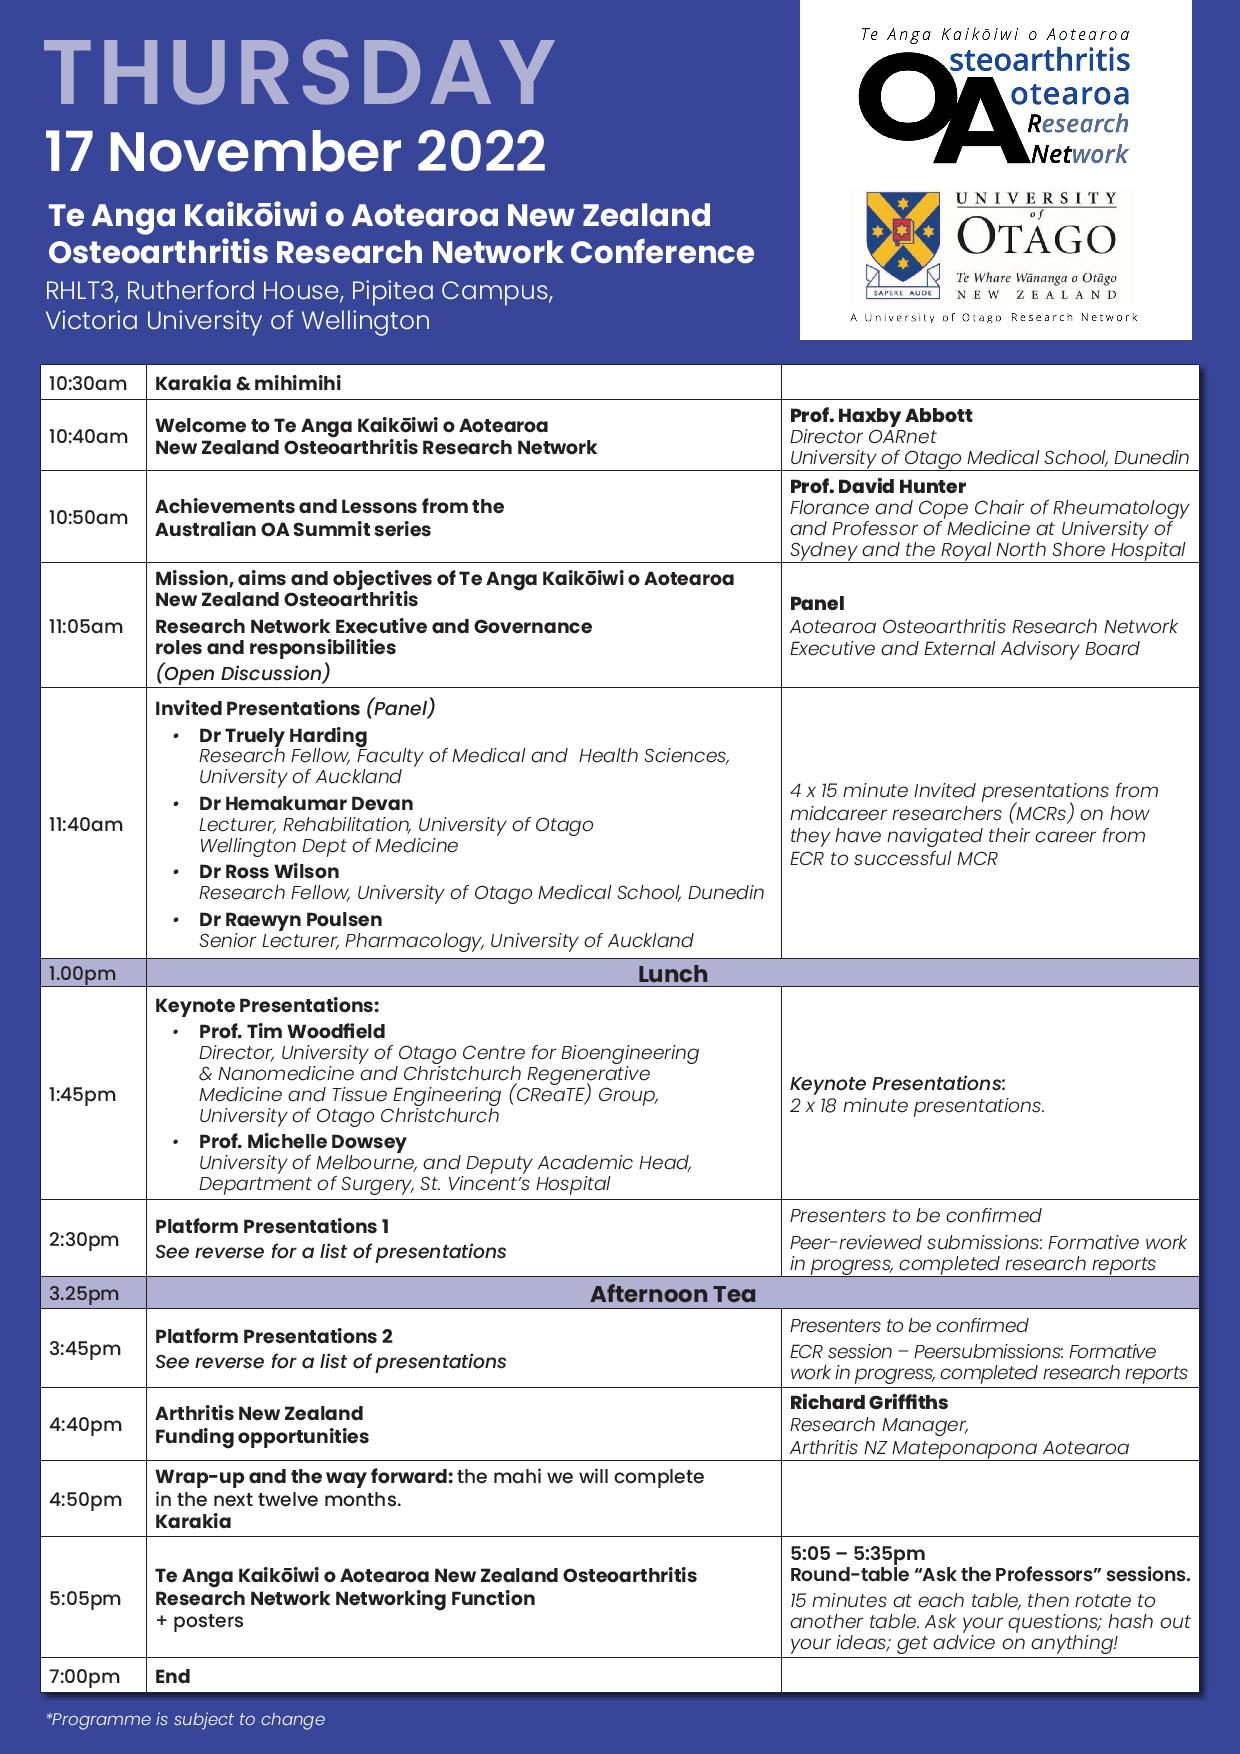 OAR-Network-Conference-Programme